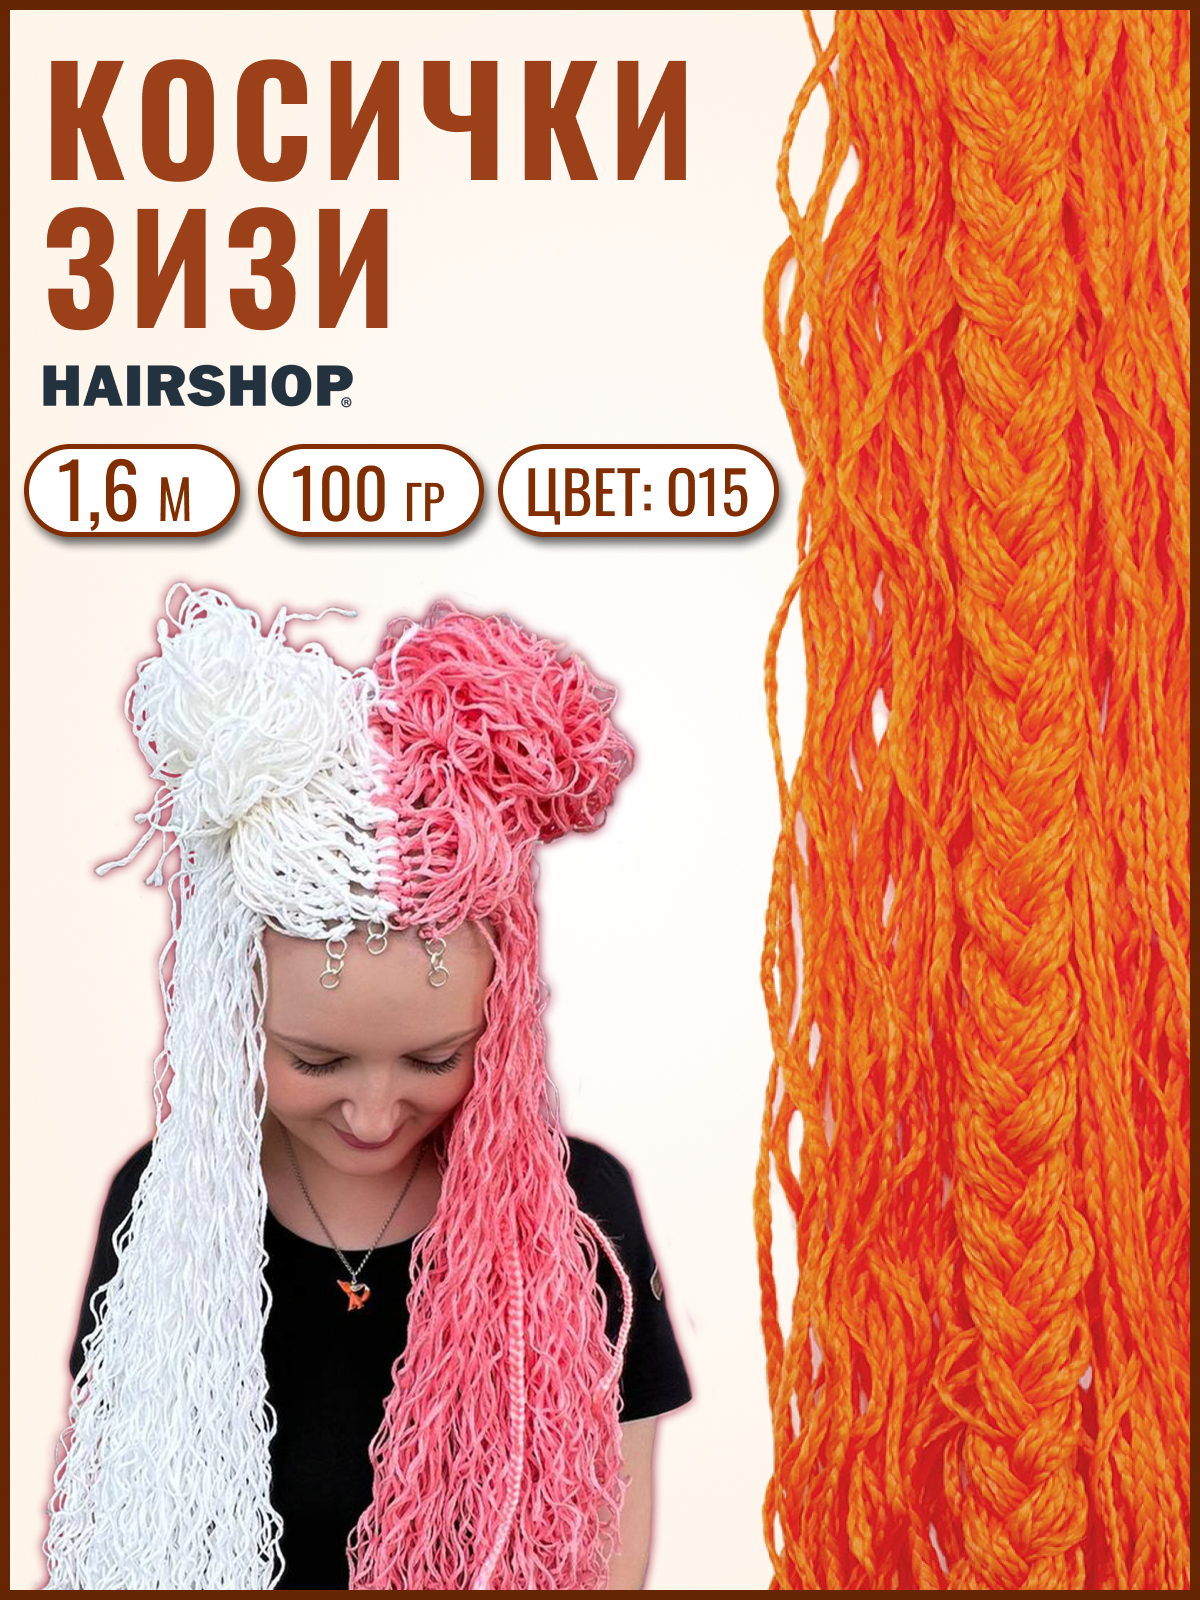 Косички Hairshop Зизи волна О15 Оранжевый косички hairshop зизи волна к19 красный с оттенком оранжевого